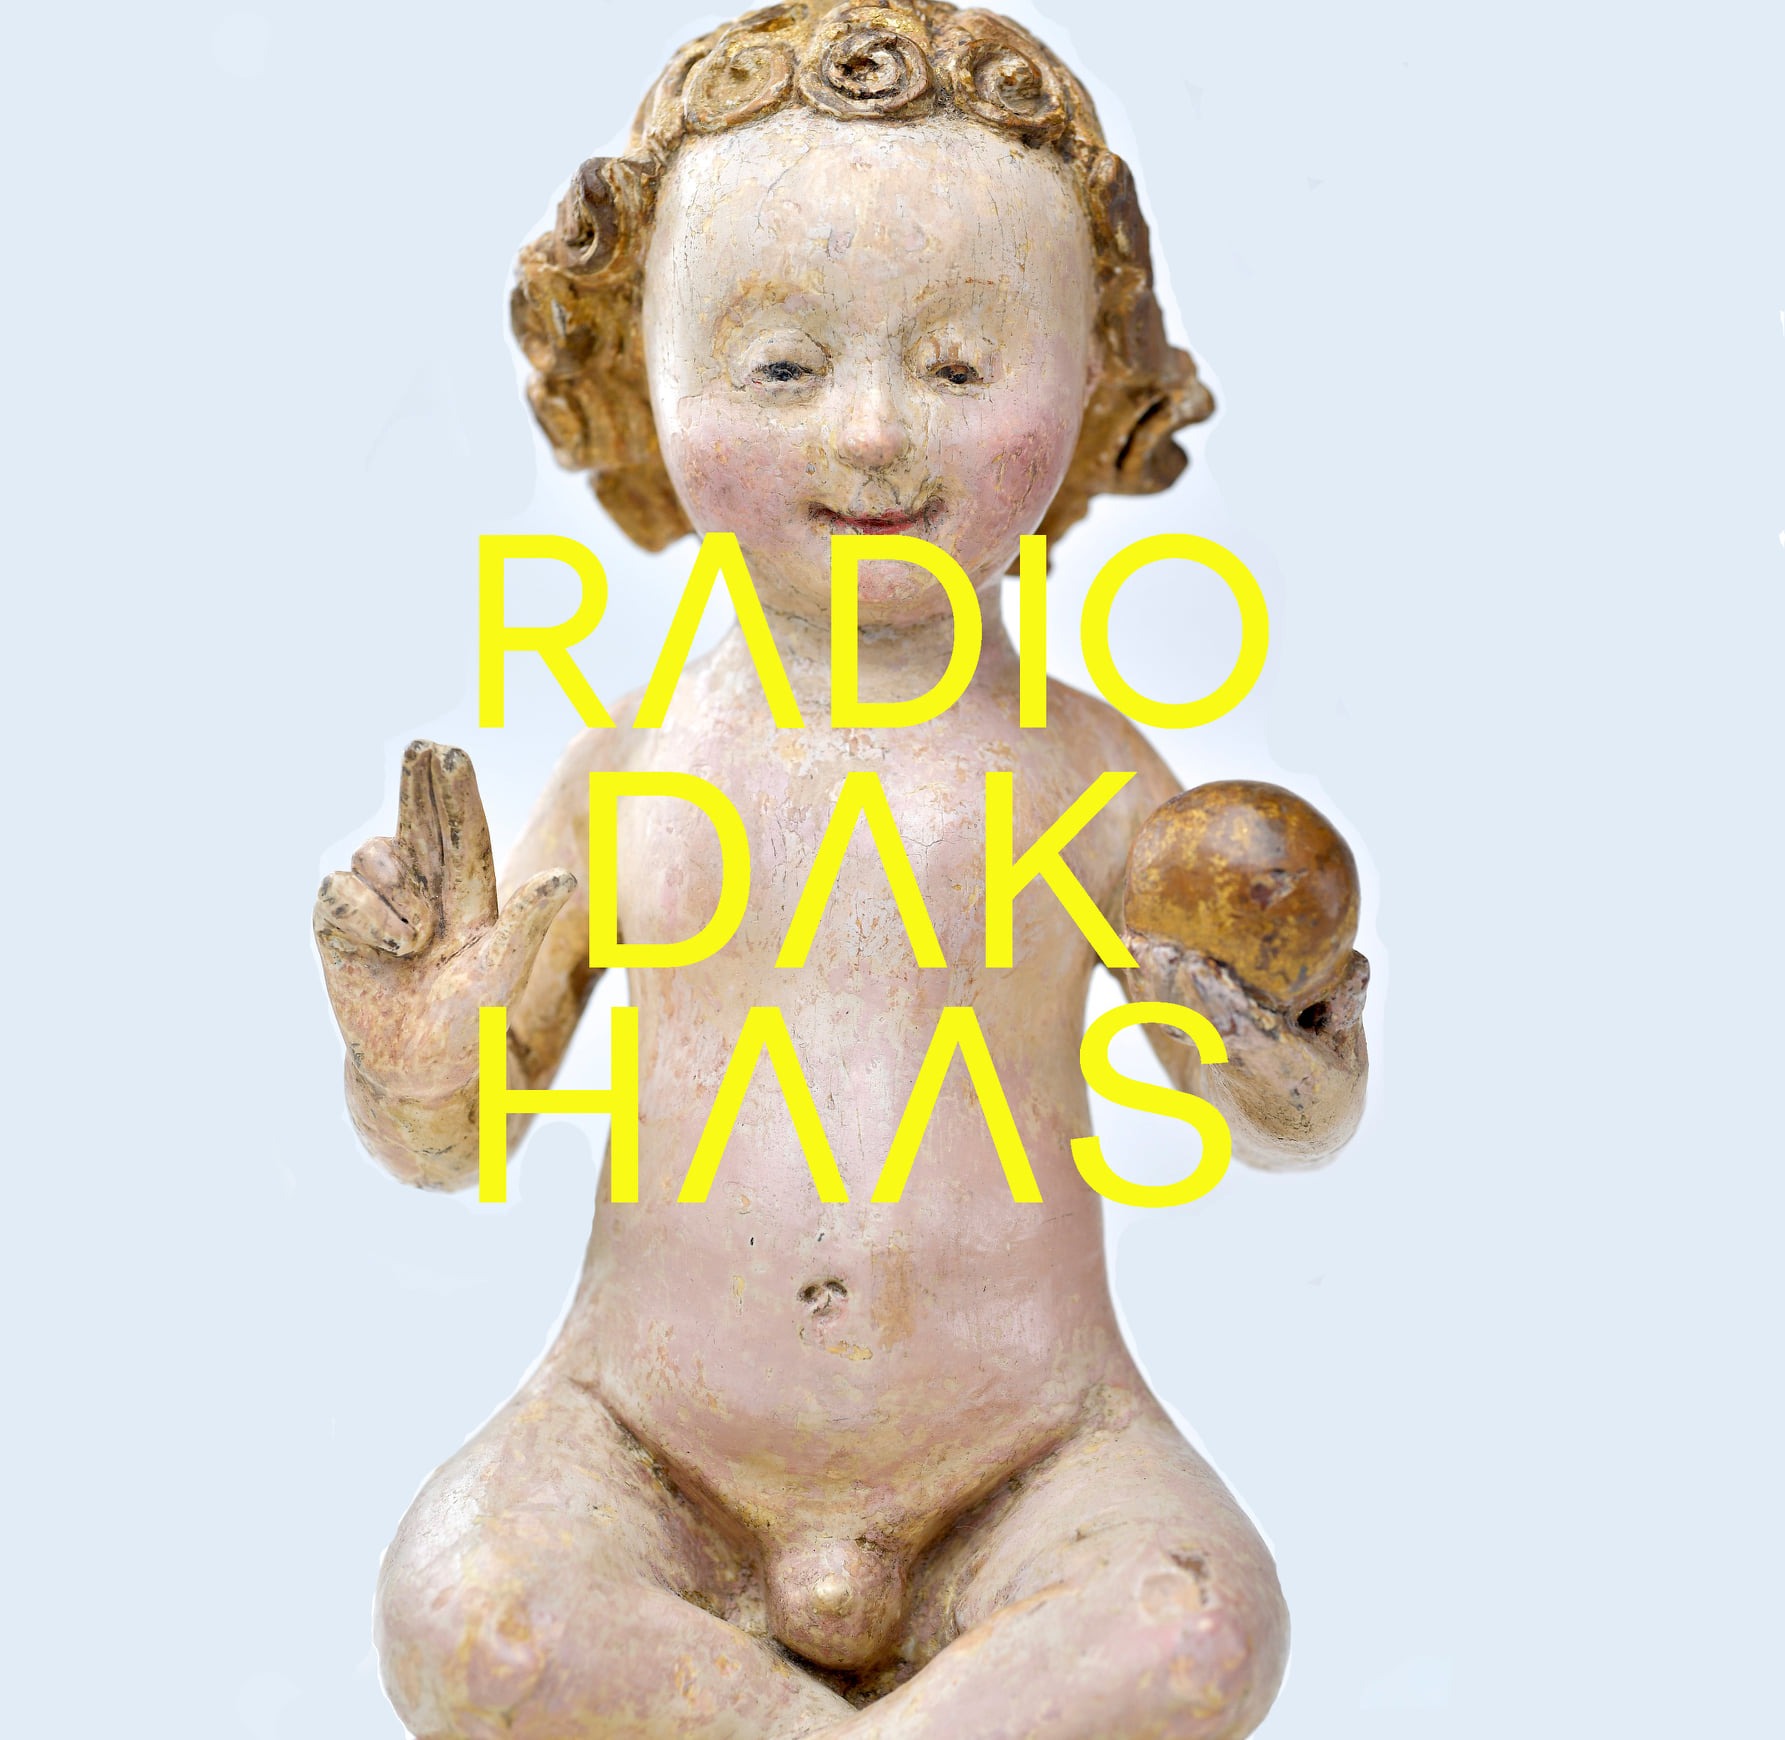 Radio Dakhaas Naakt 3: Cultureel erfgoed ontmanteld en met je schoonouders naar het naaktstrand